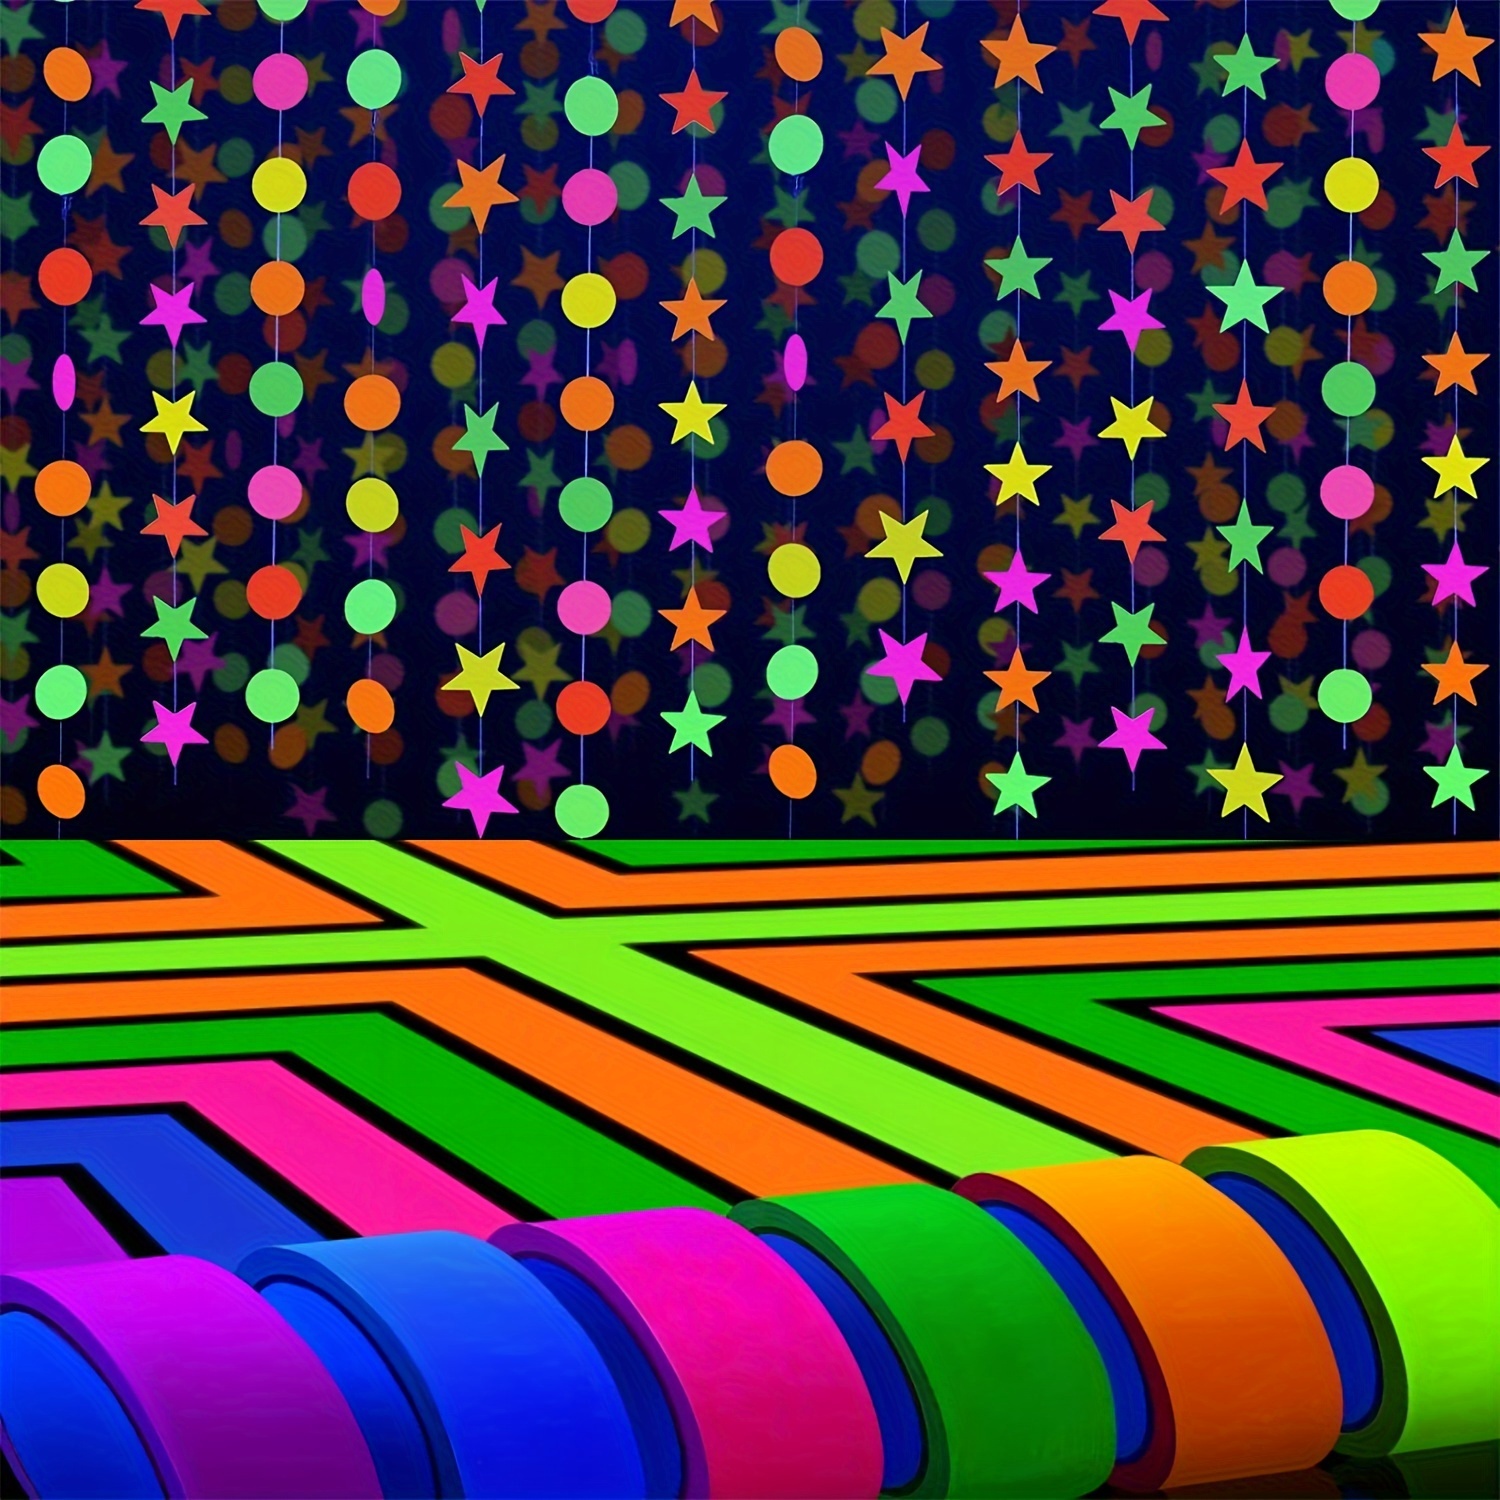 Neon Party Supplies Set 6 Colors Uv Black Light Reactive - Temu